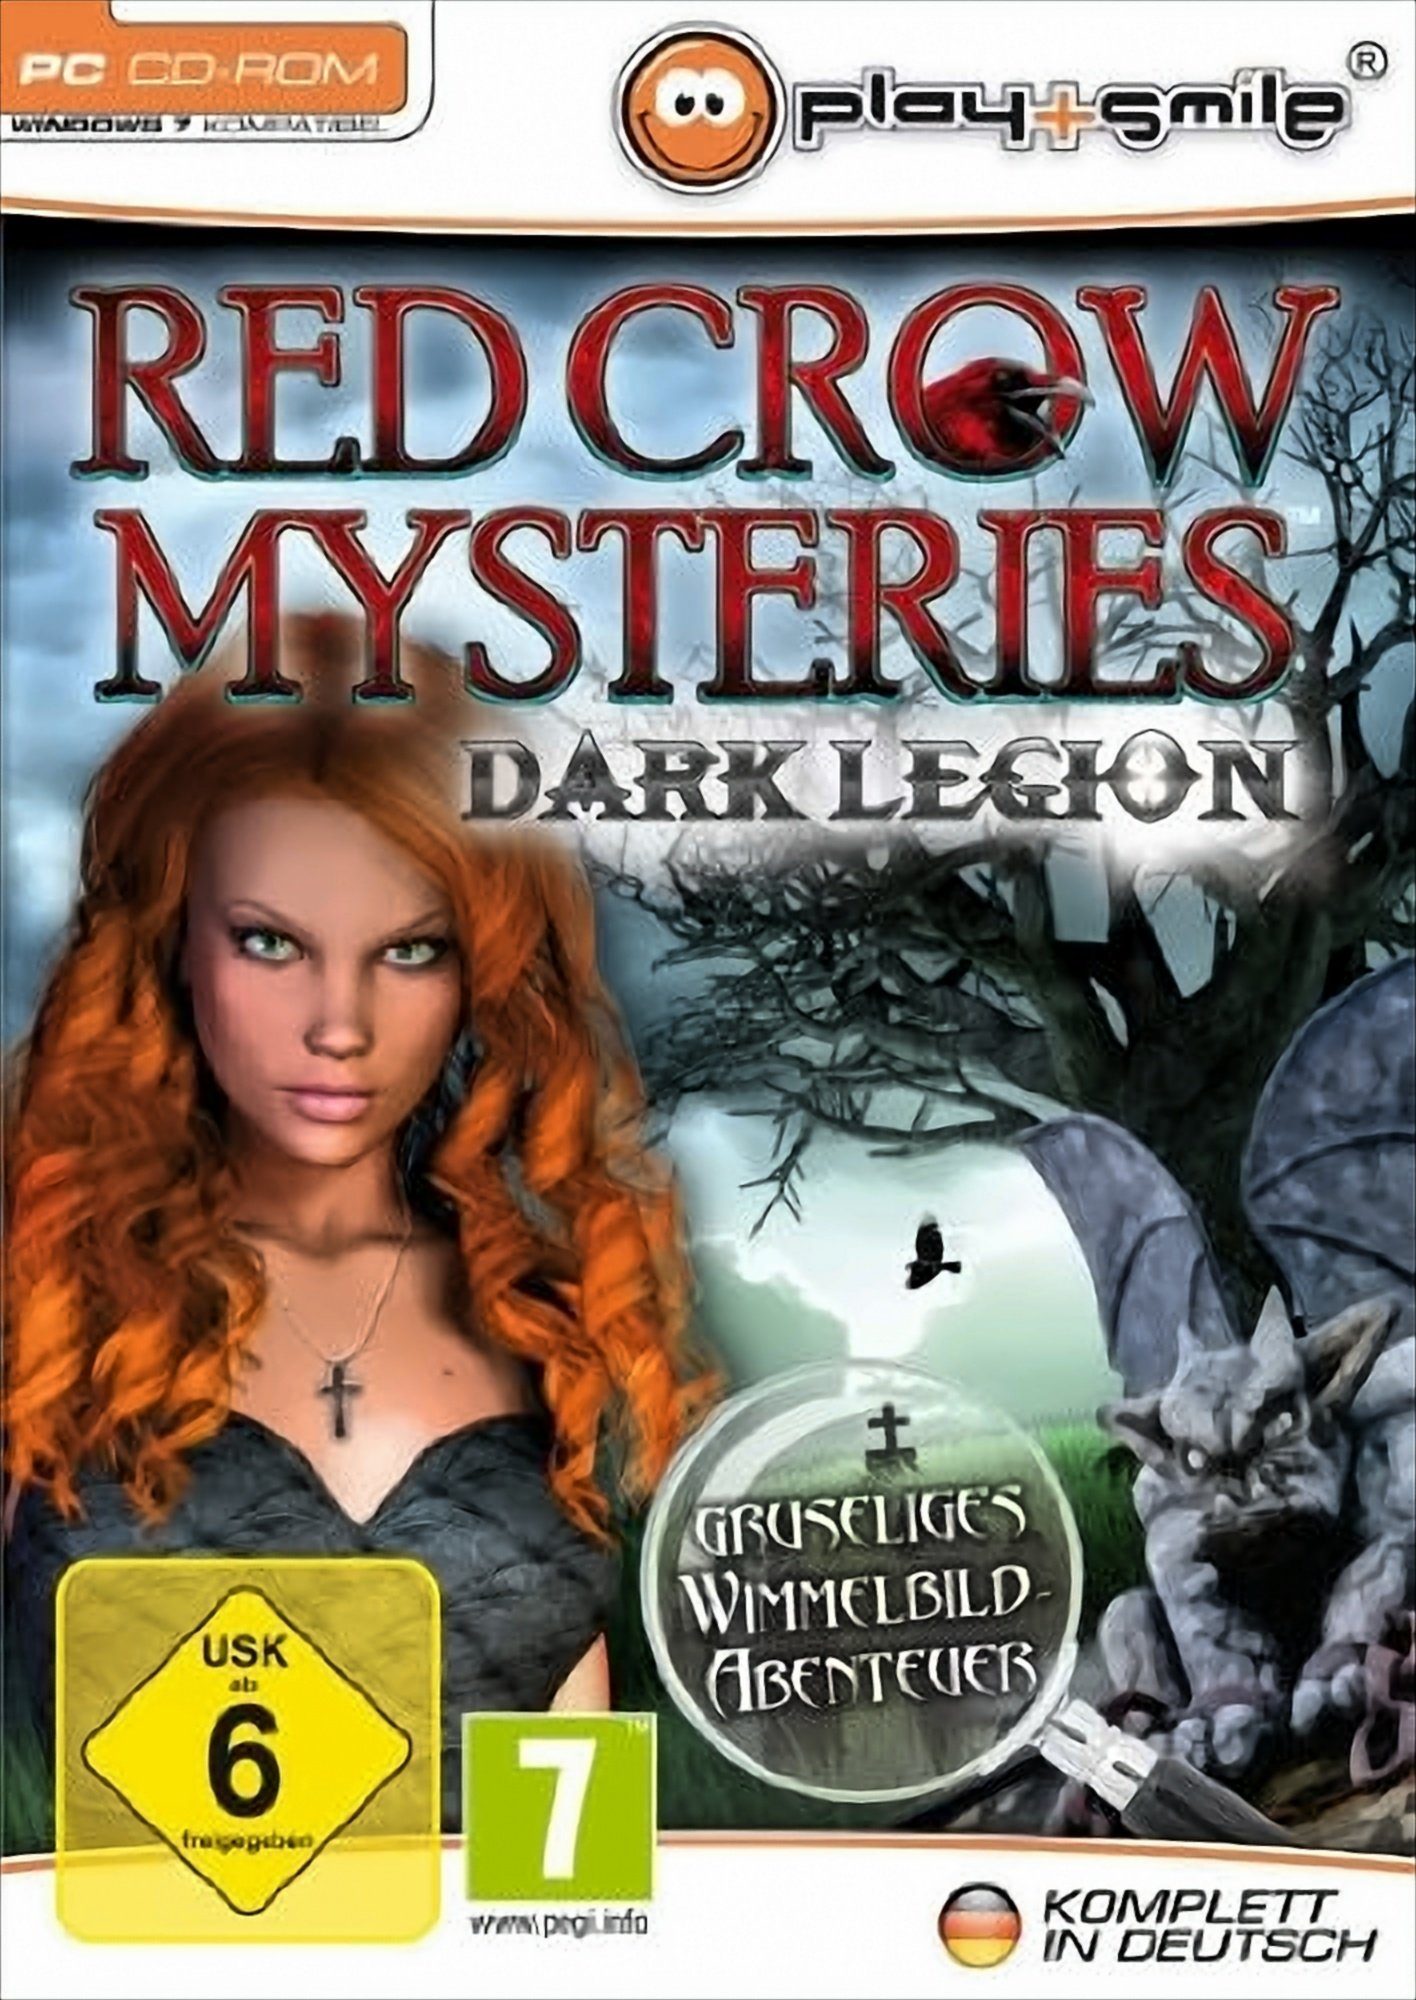 Red Crow Mysterys: Dark Legion PC